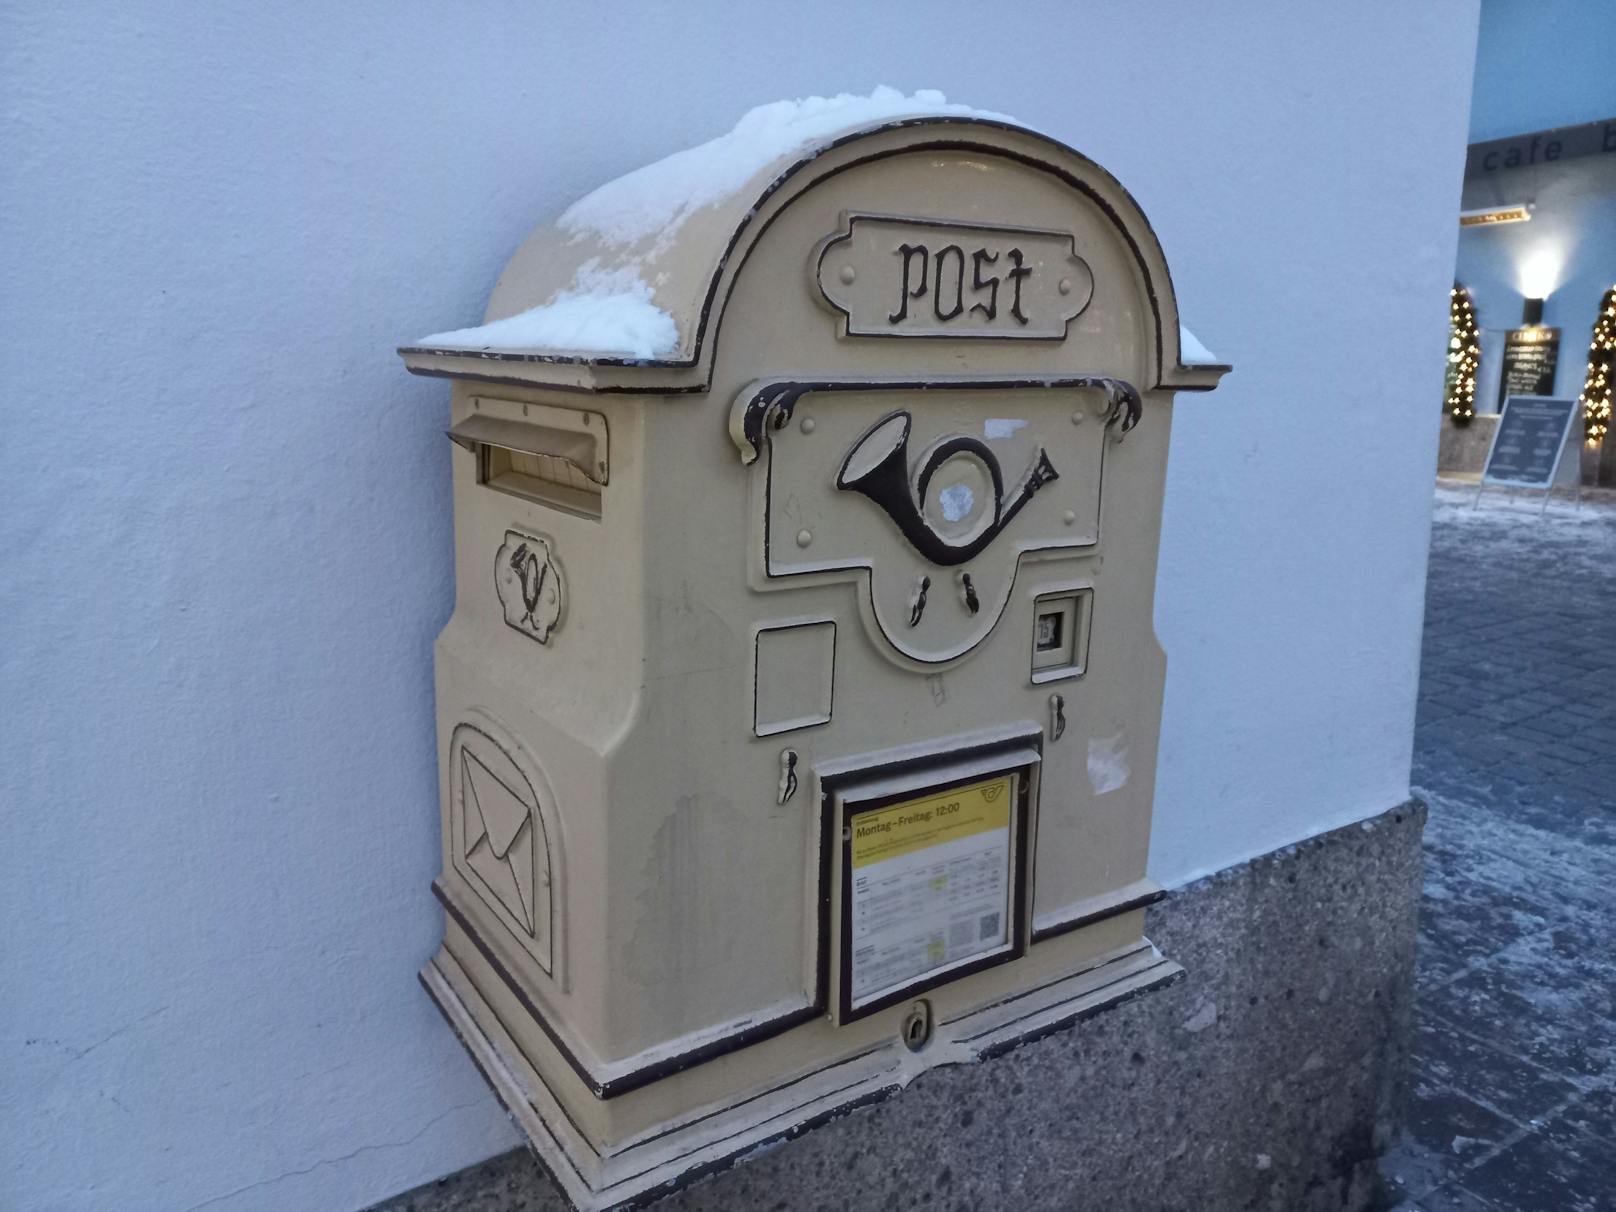 Nostalgie pur - ein Briefkasten in der Gamsstadt